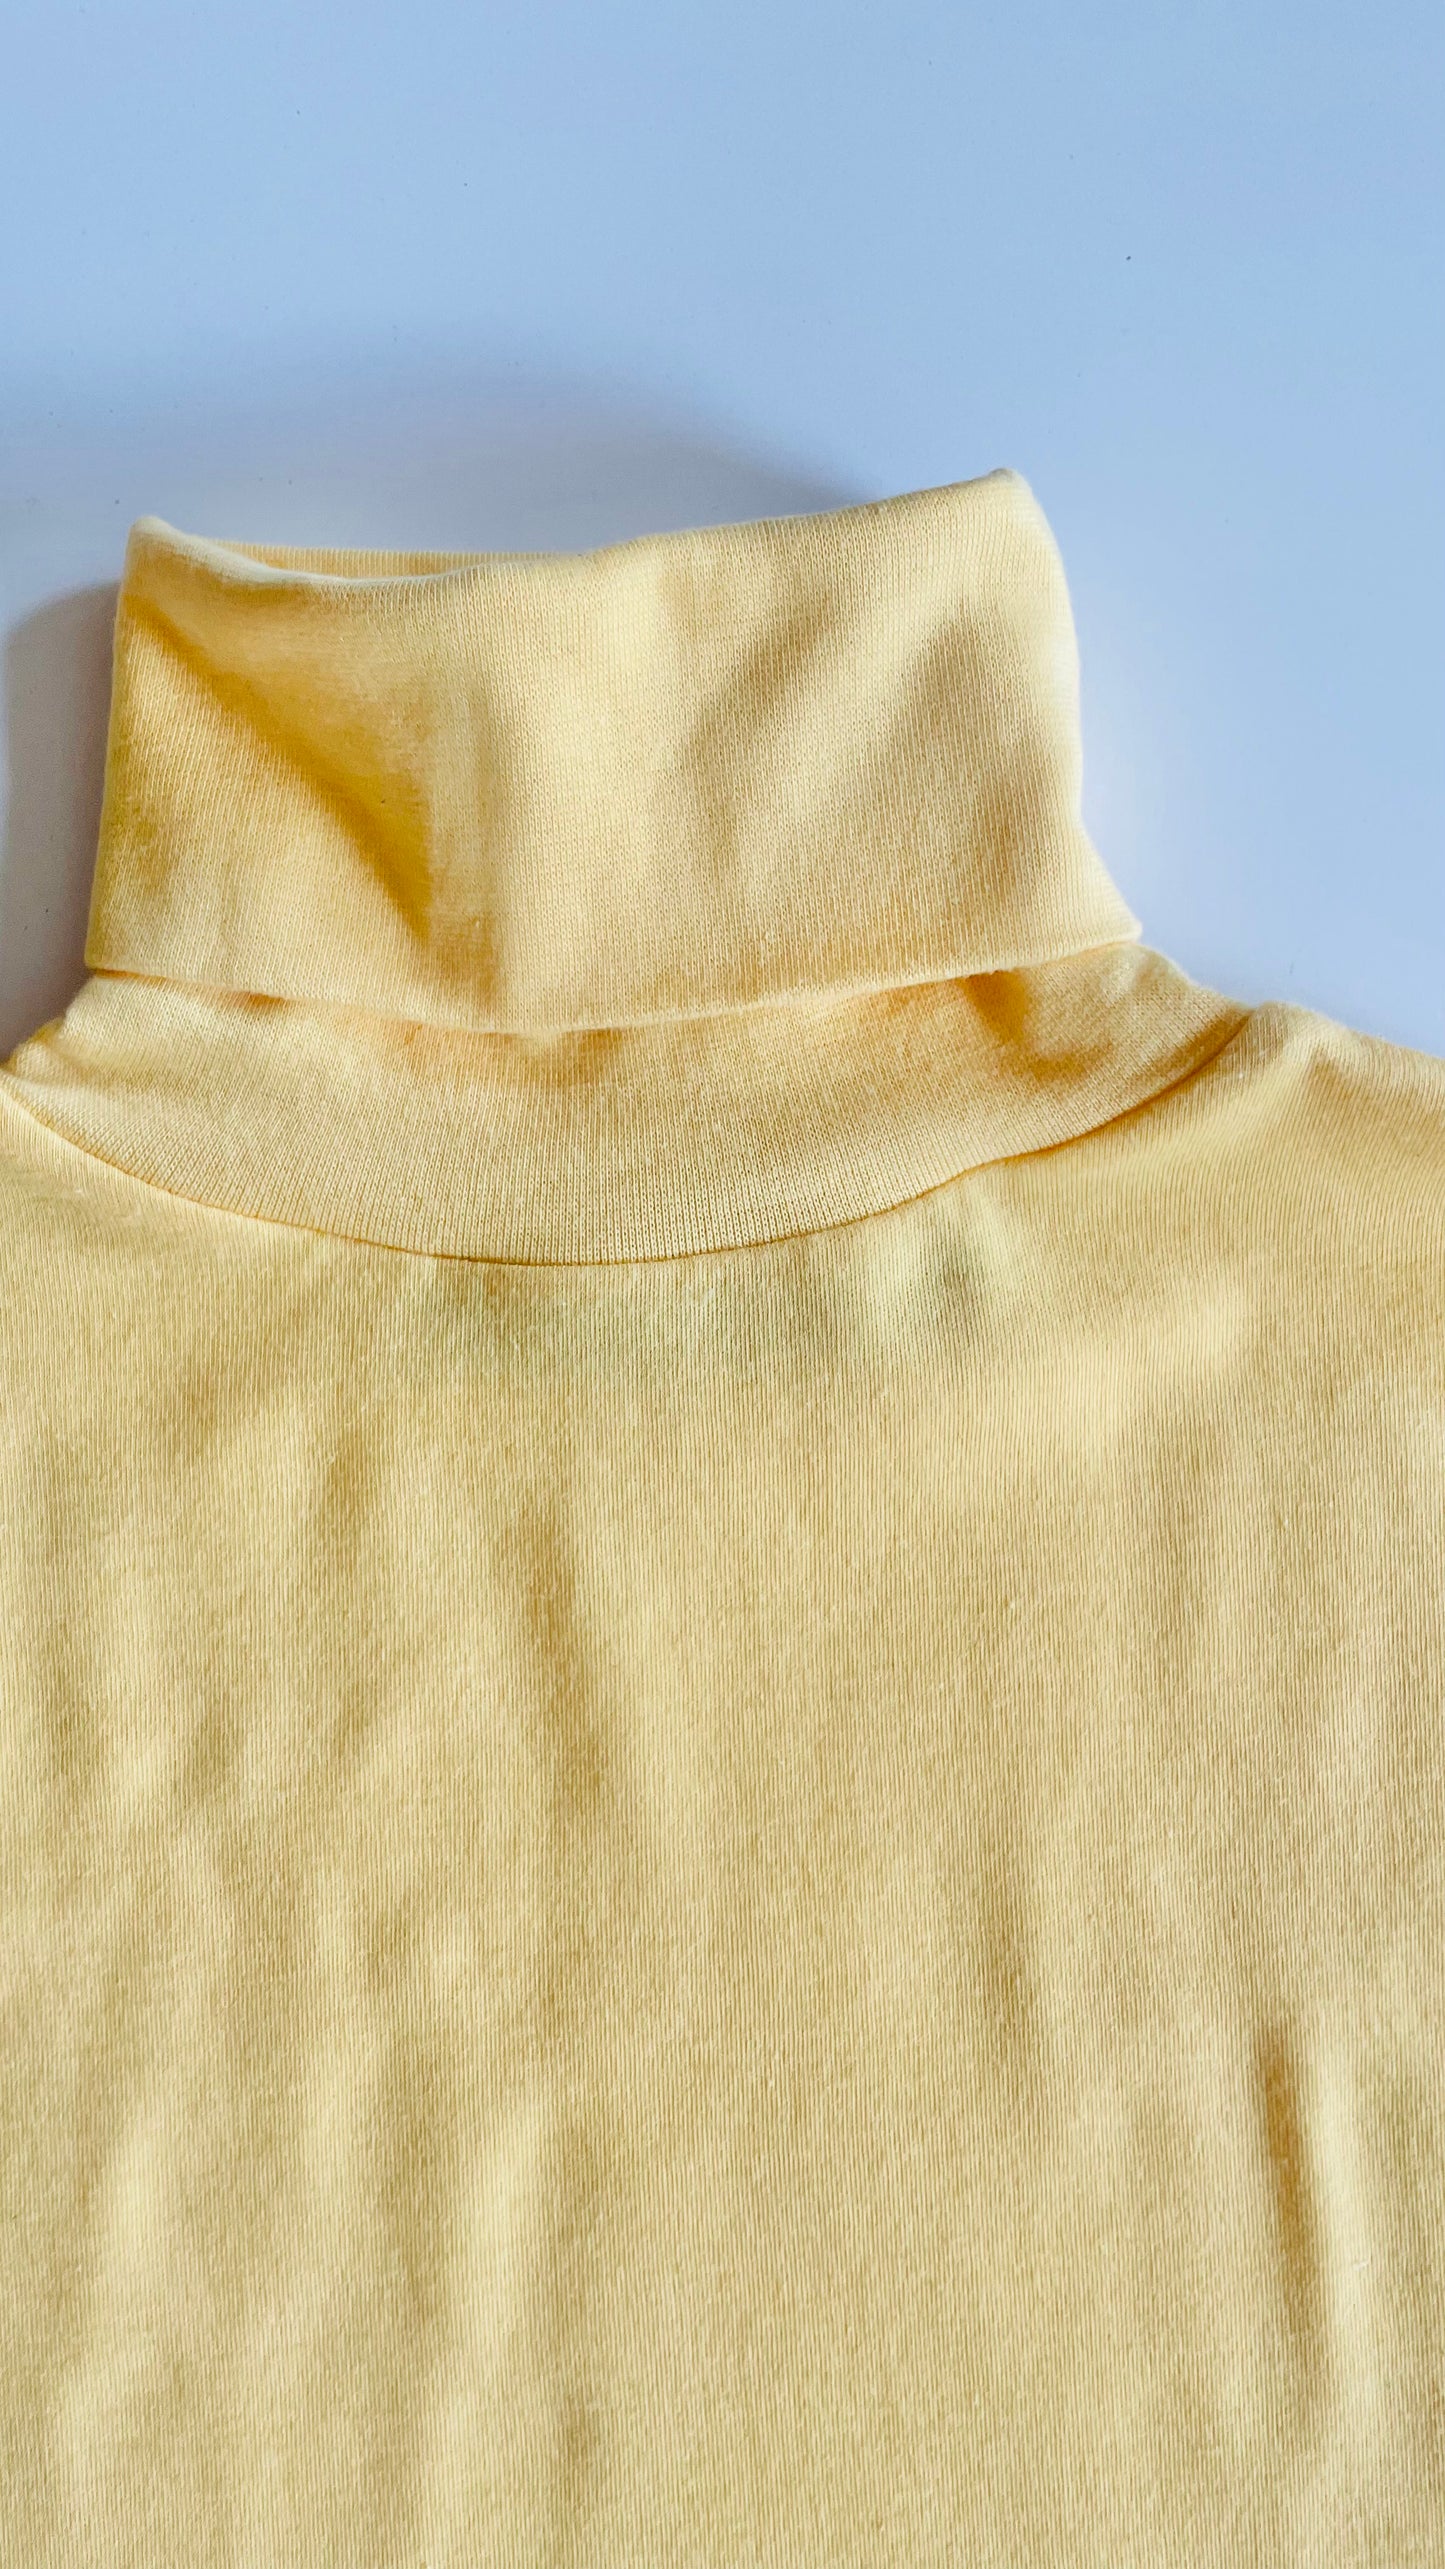 Vintage 70s Diane Von Furstenberg yellow knit turtleneck - Size S